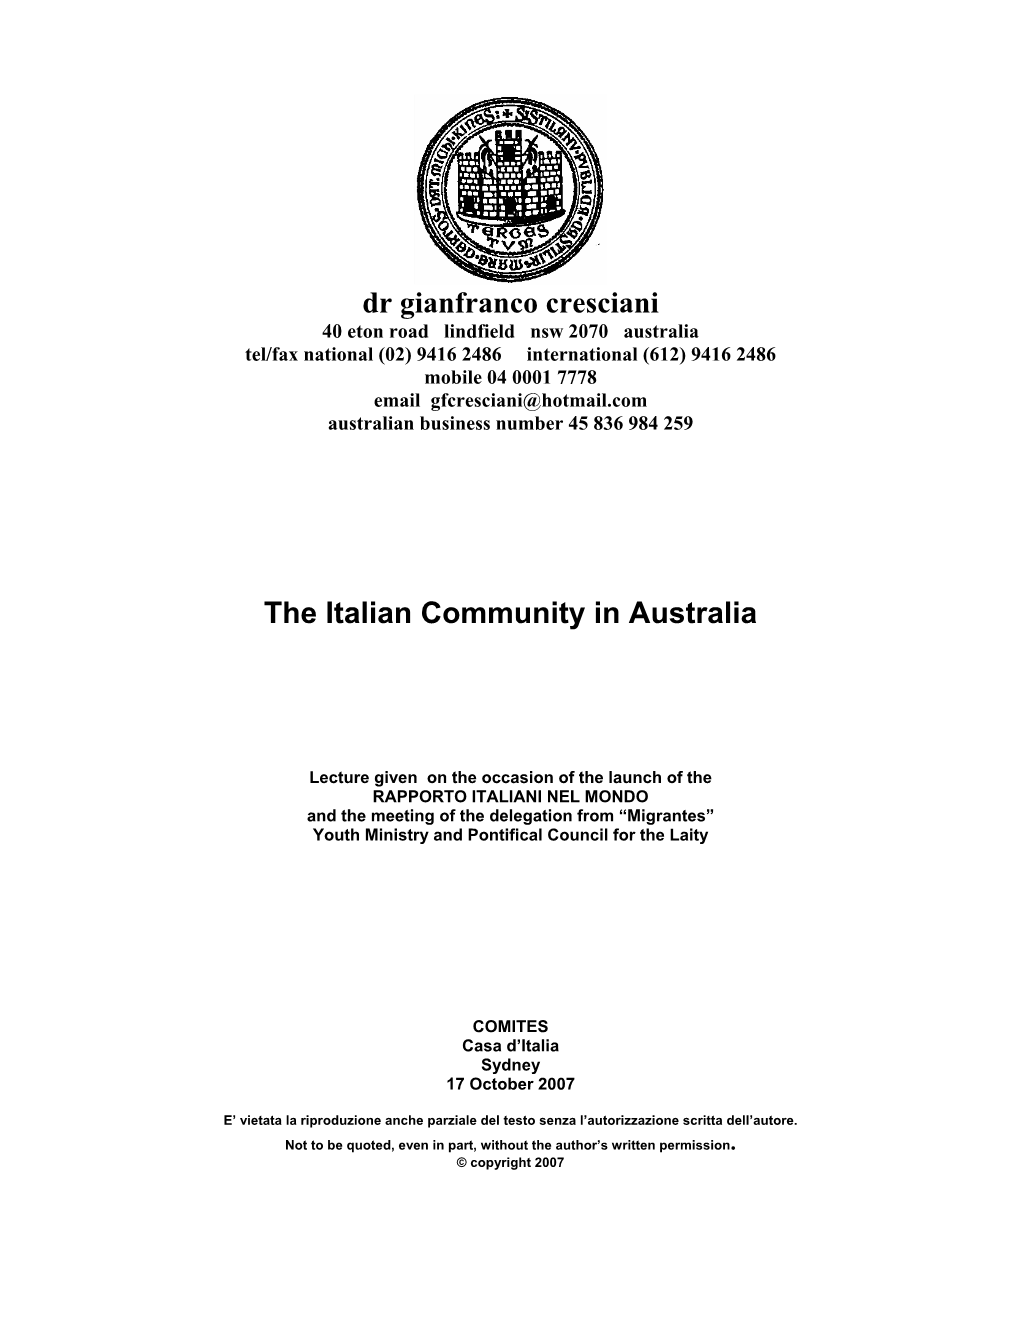 Dr Gianfranco Cresciani the Italian Community in Australia